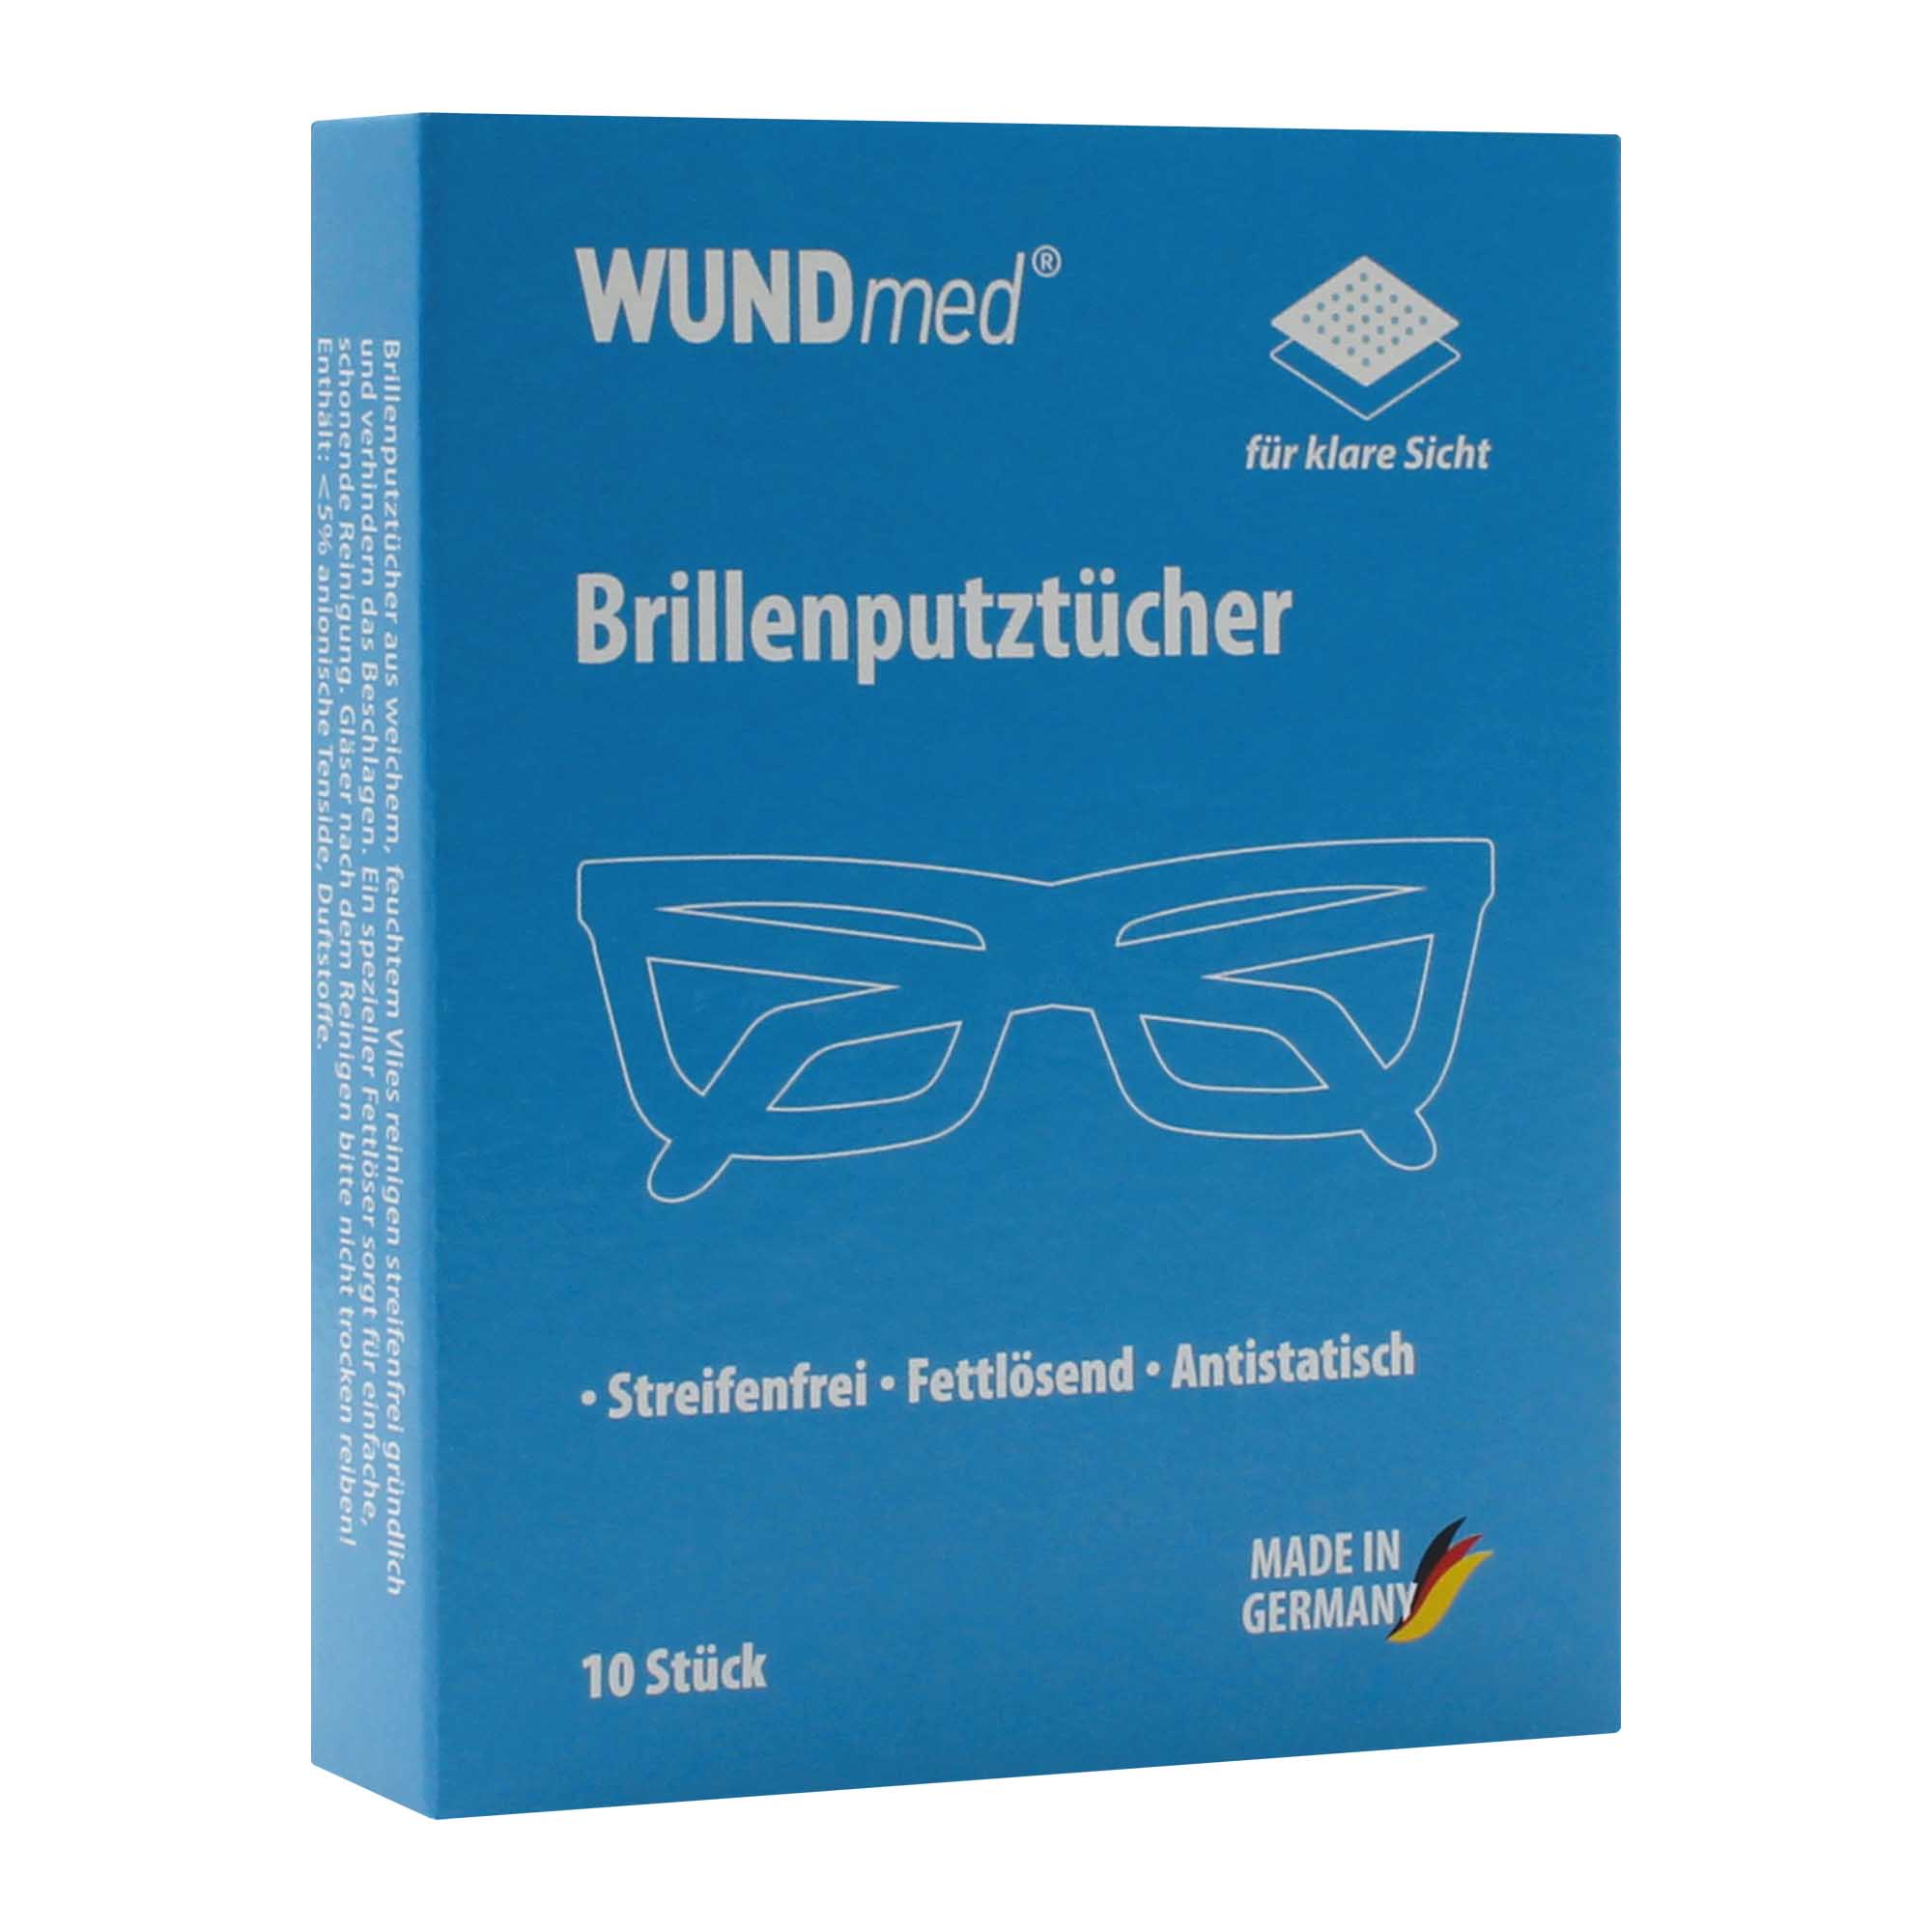 WUNDmed® Brillenputztücher 10 Stück/Packung